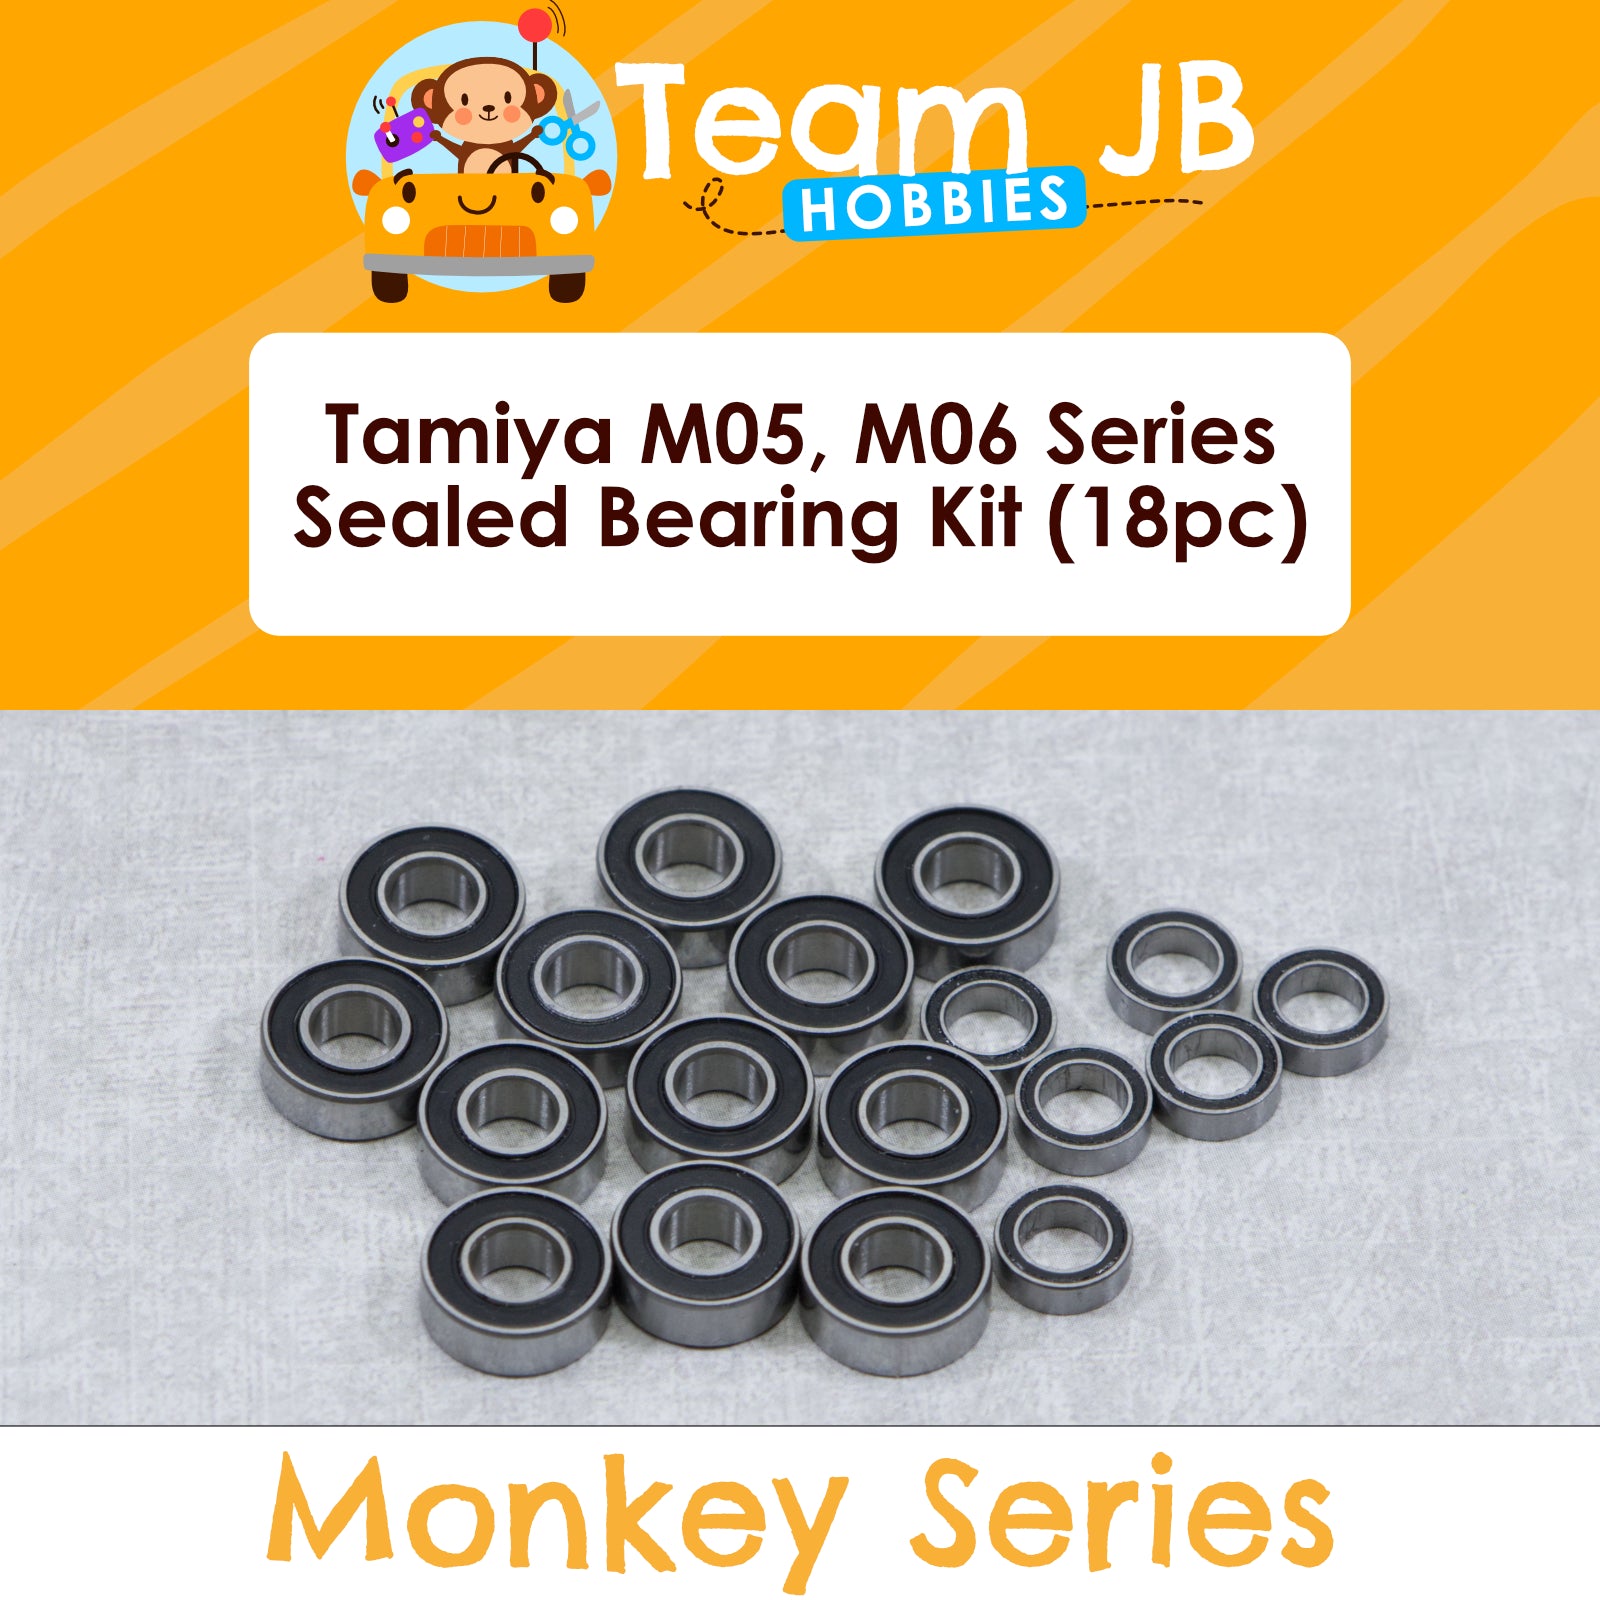 Tamiya M-05, M-06 Series - CR-X, Fiat, Lowride, VW - Sealed Bearing Kit